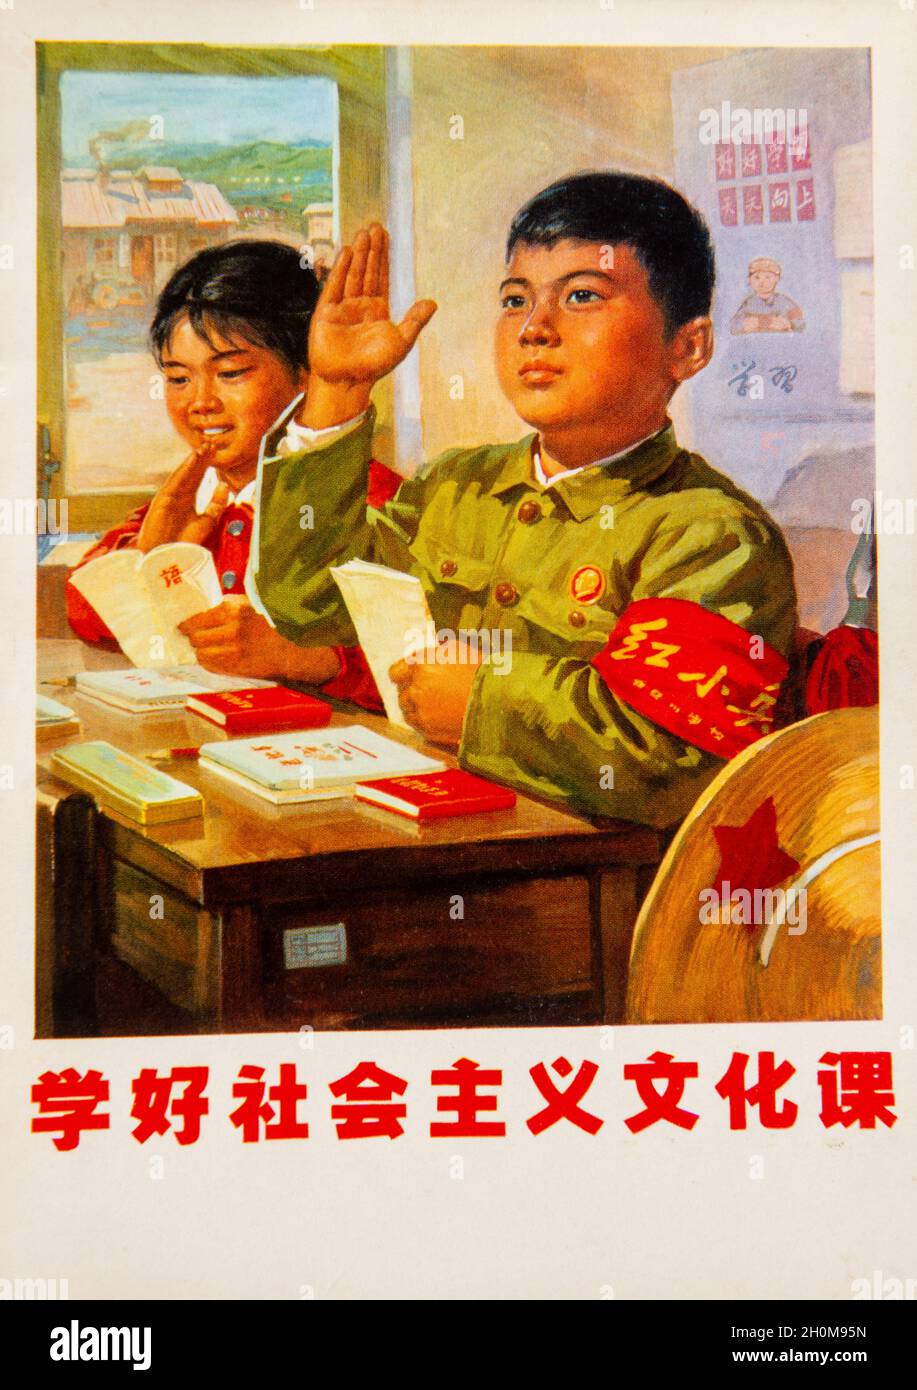 Affiche de propagande du petit soldat rouge qui se classe pendant la Révolution culturelle chinoise. Banque D'Images